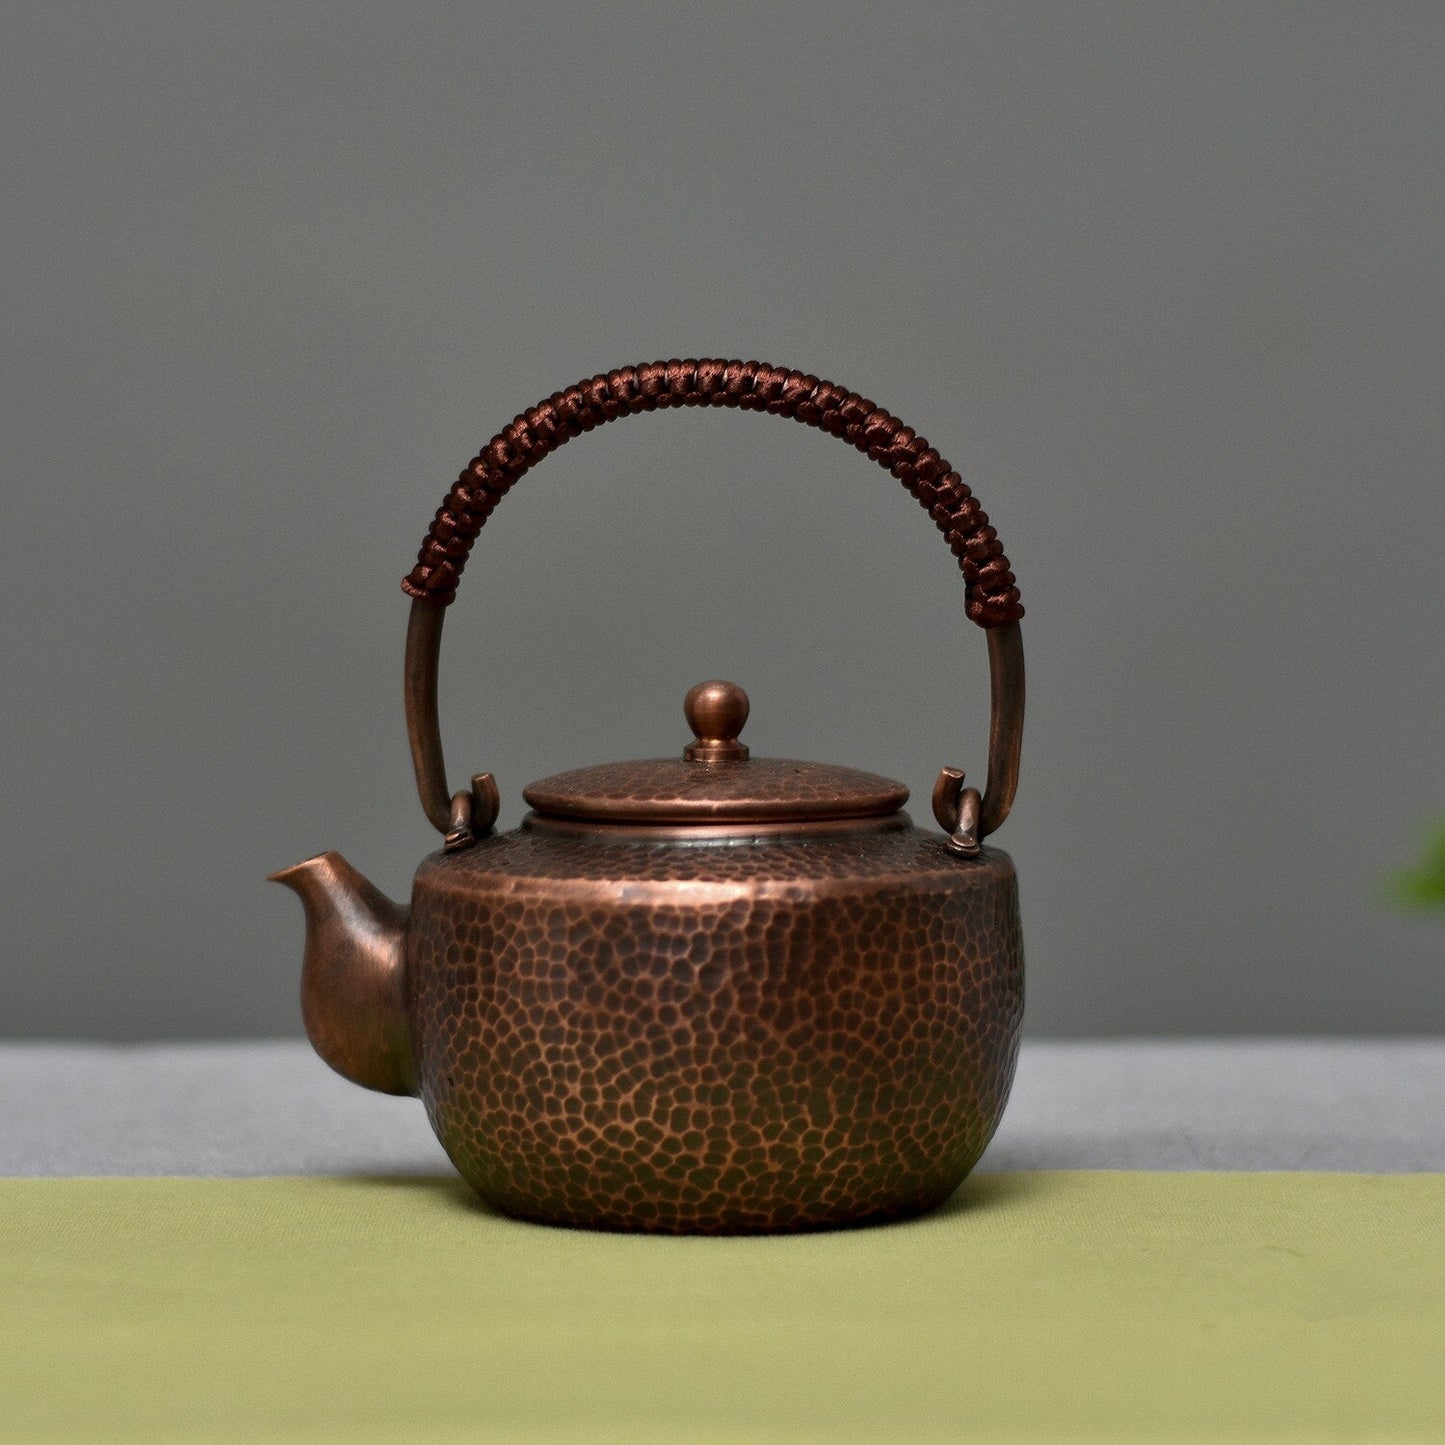 Chinese theepot theepot set traditionele oppervlakte met de hand geschilderde theepot handgemaakt warmwater ketel koperen brandende ketel kongfu theeset